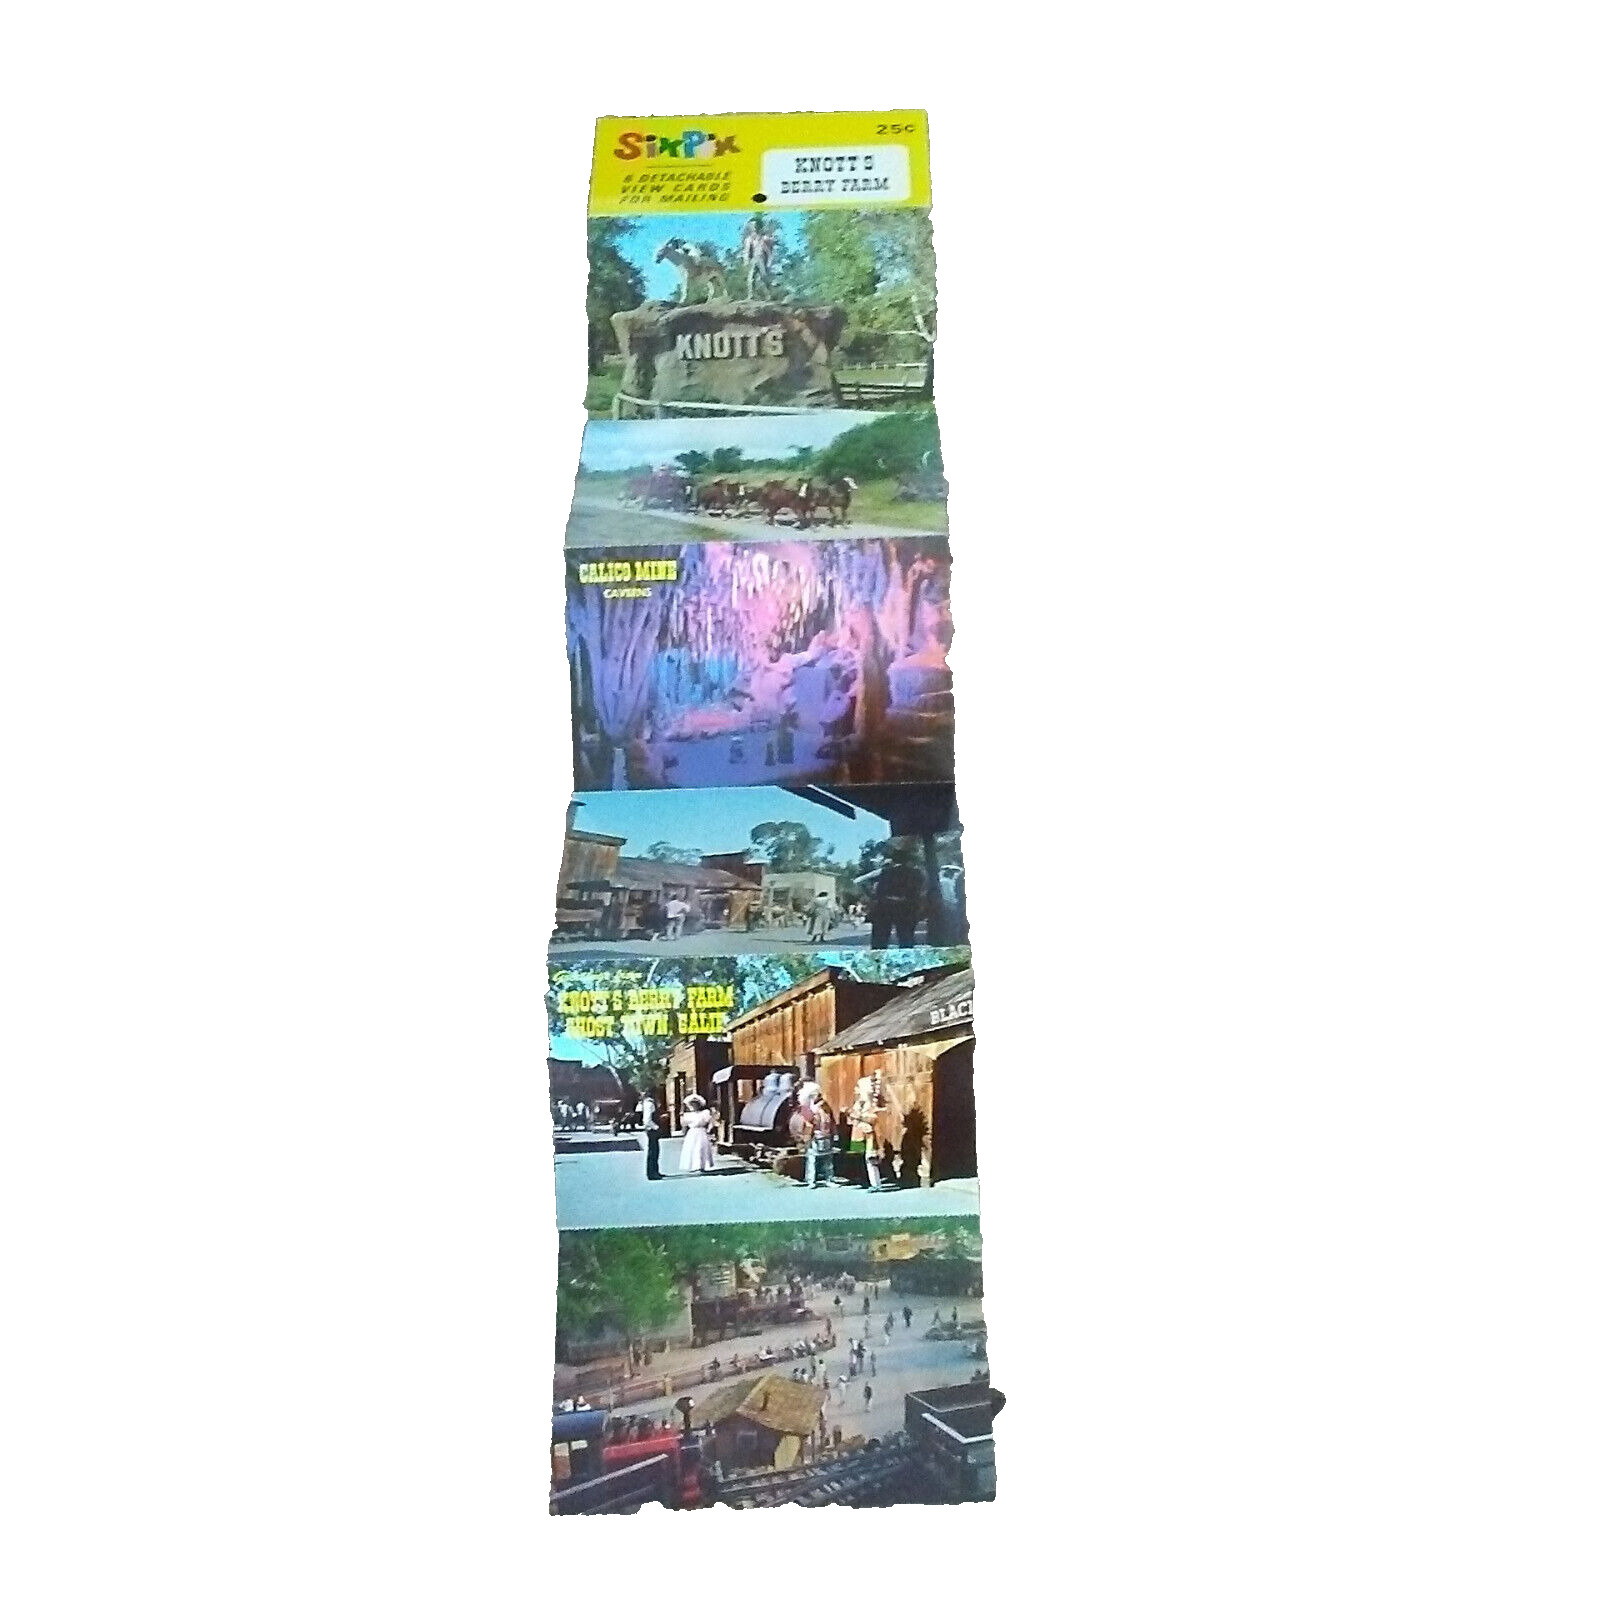 Knott's Berry Farm 6 Detachable View Cards Postcards Sixpix SP22 UNUSED